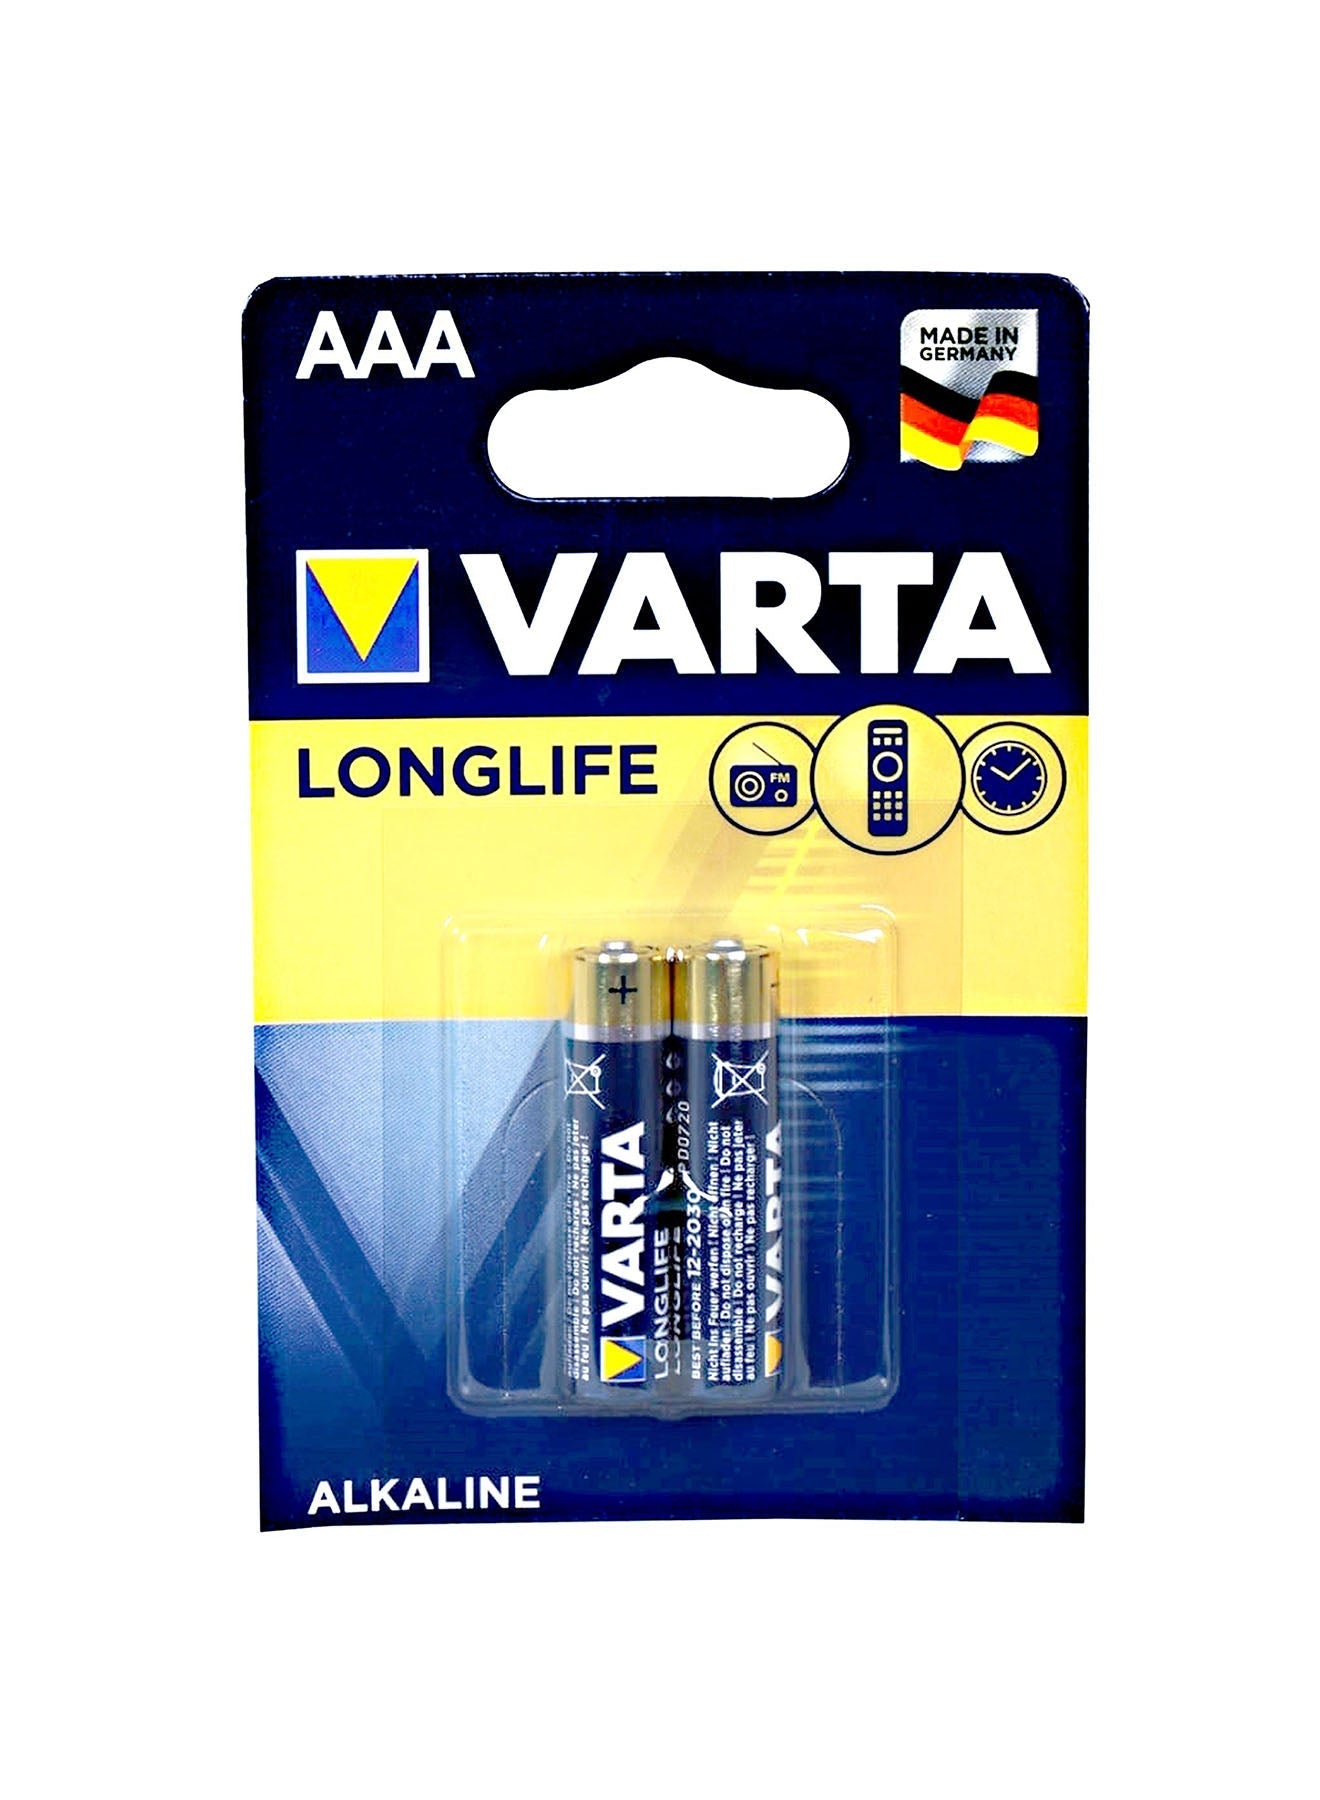 Varta Long Life AAA 2 Unit Alkaline Battery 15 V Value Pack of 3